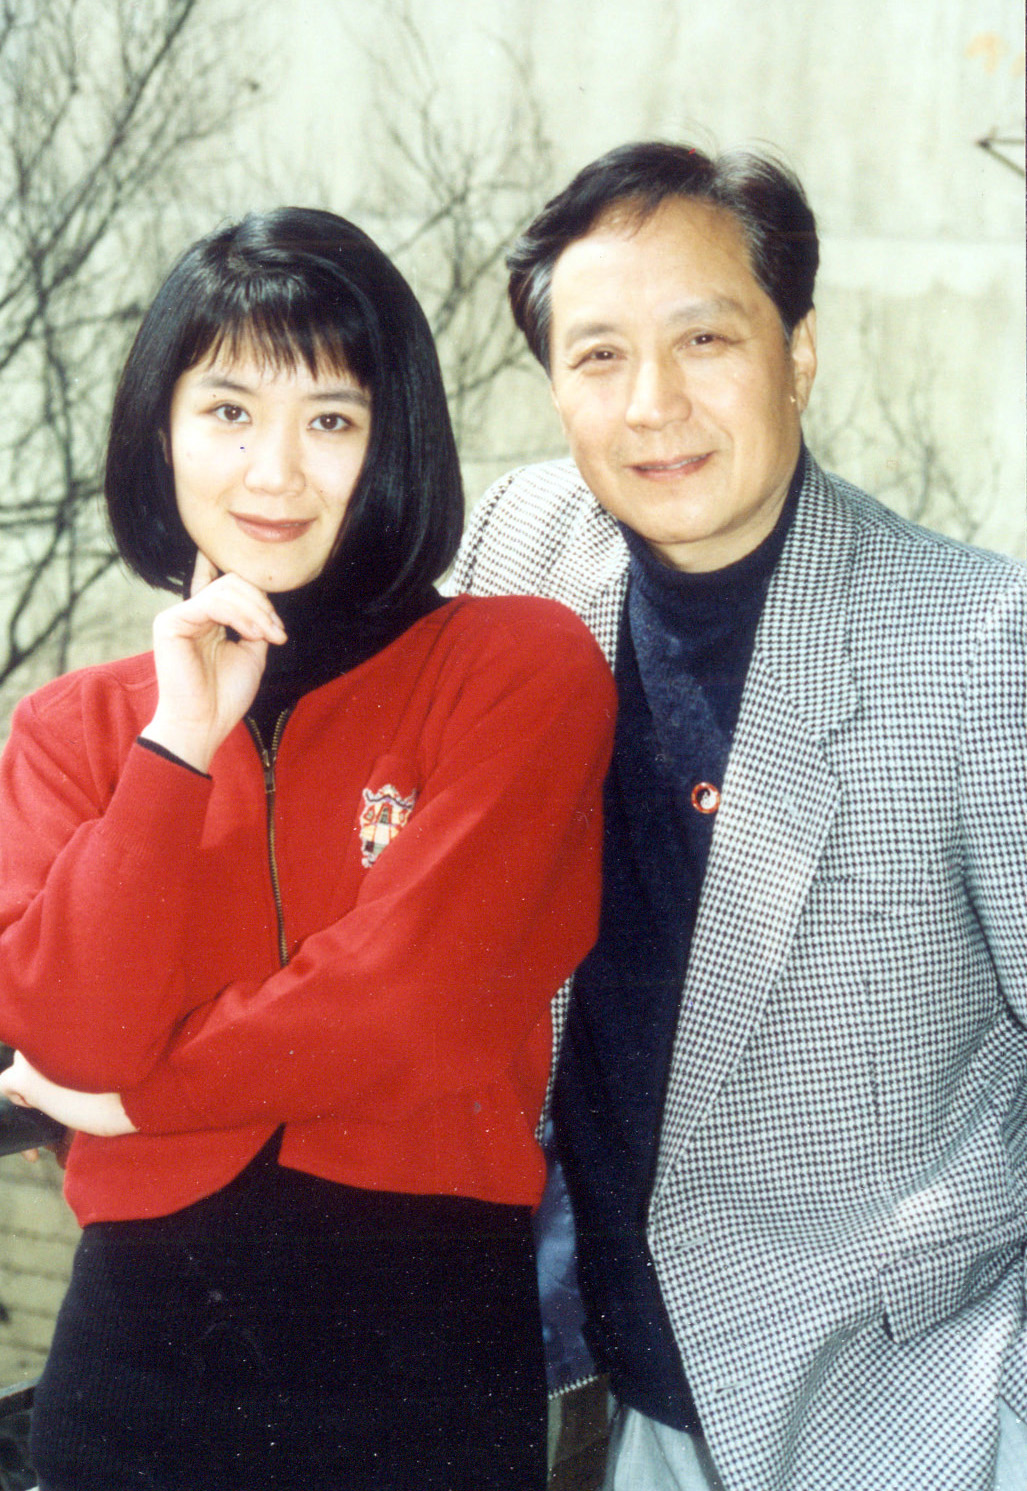 Yan Xiang and his daughter Yan Xiaopin